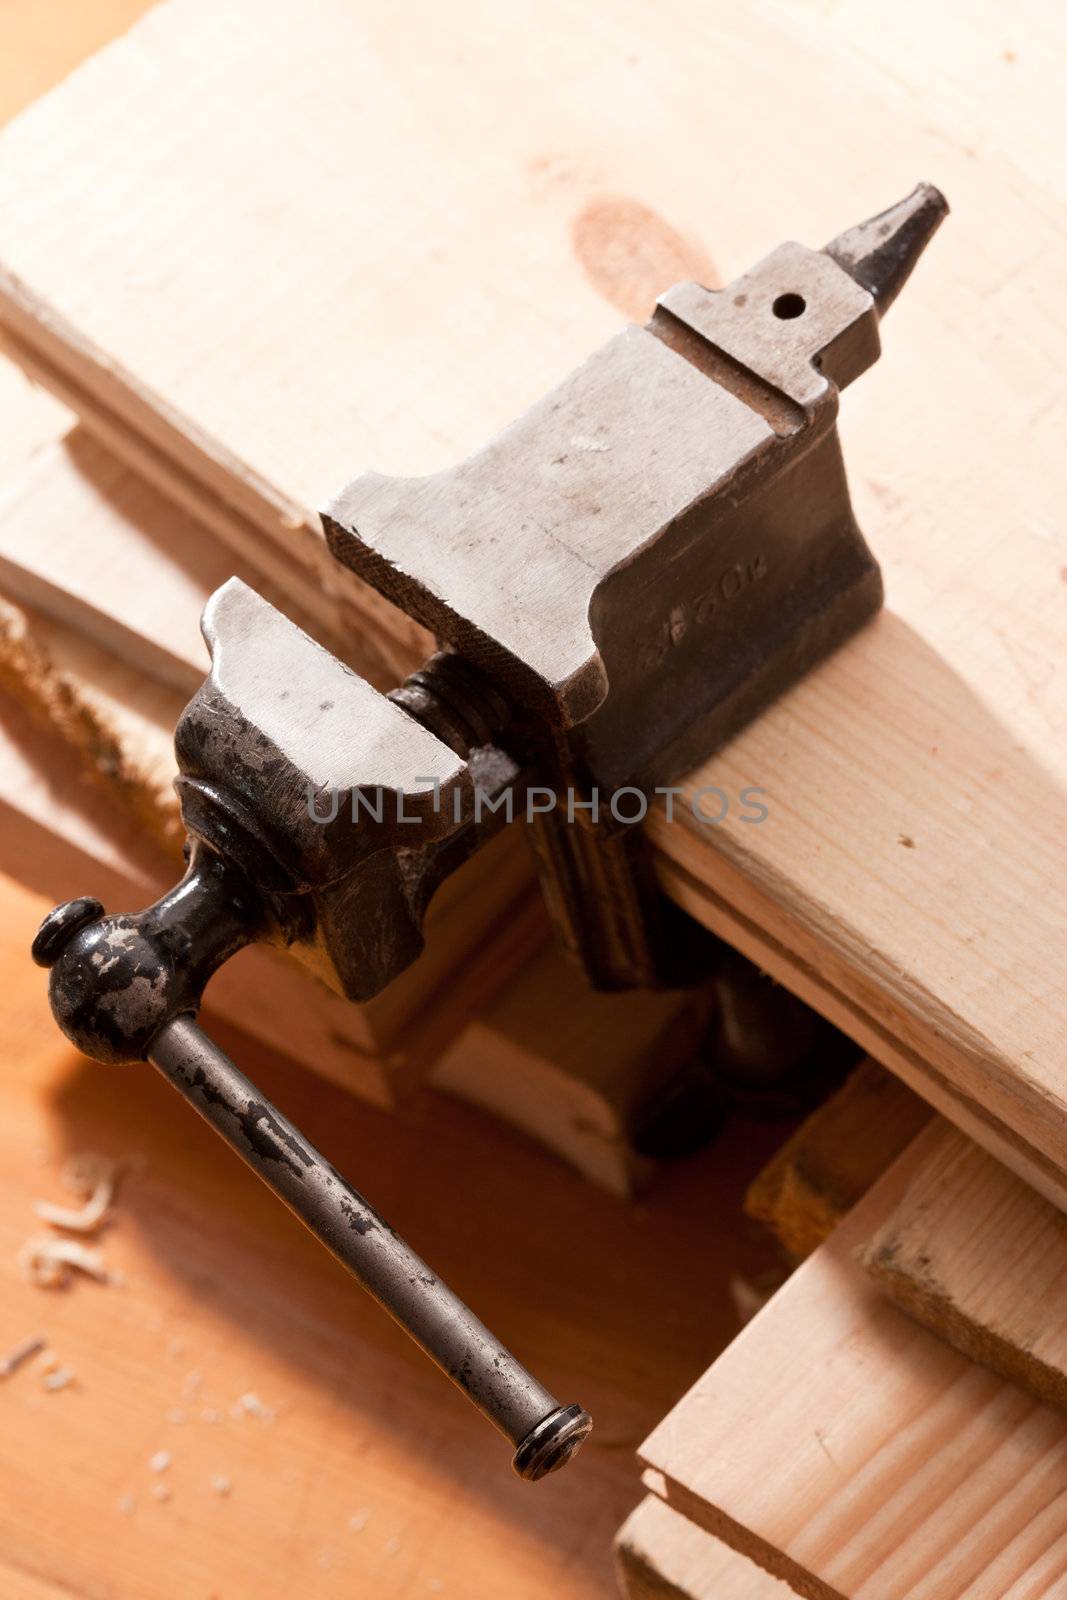 tools series: steel black grip vice on sawdust table